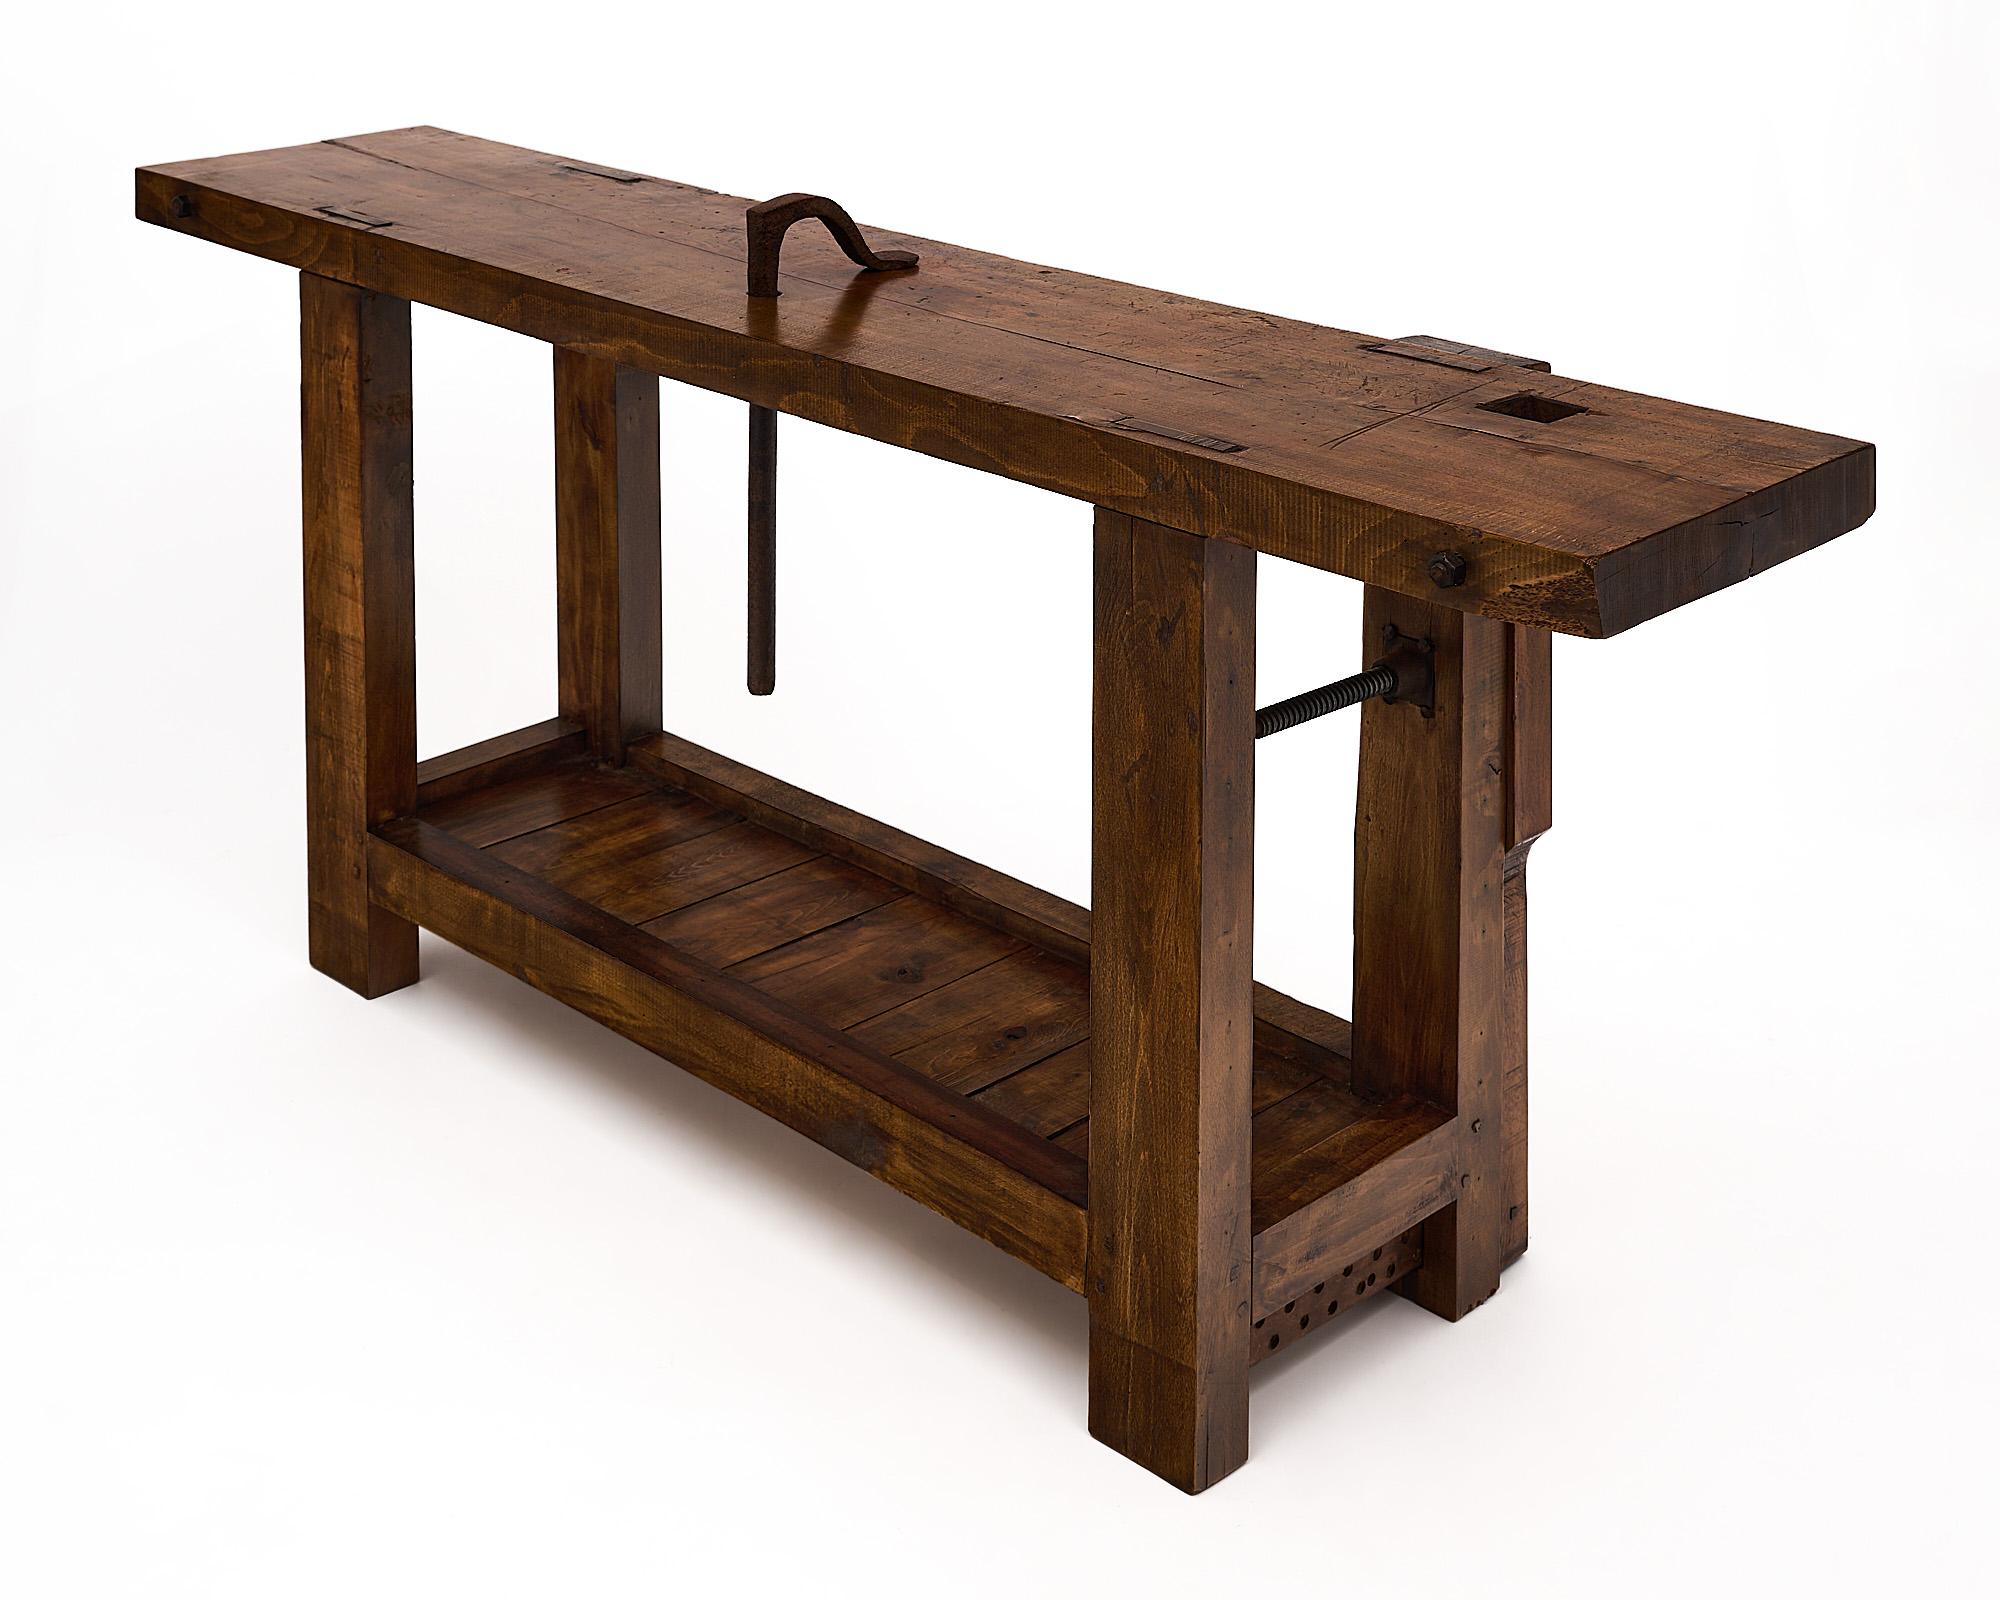 Établi, français, en bois de hêtre. C'est le bois indispensable dans les ateliers d'artisans tout au long du XIXe siècle. Cette console comprend l'étau d'origine, une pince en fer forgé et une étagère inférieure. La profondeur du plateau de la table